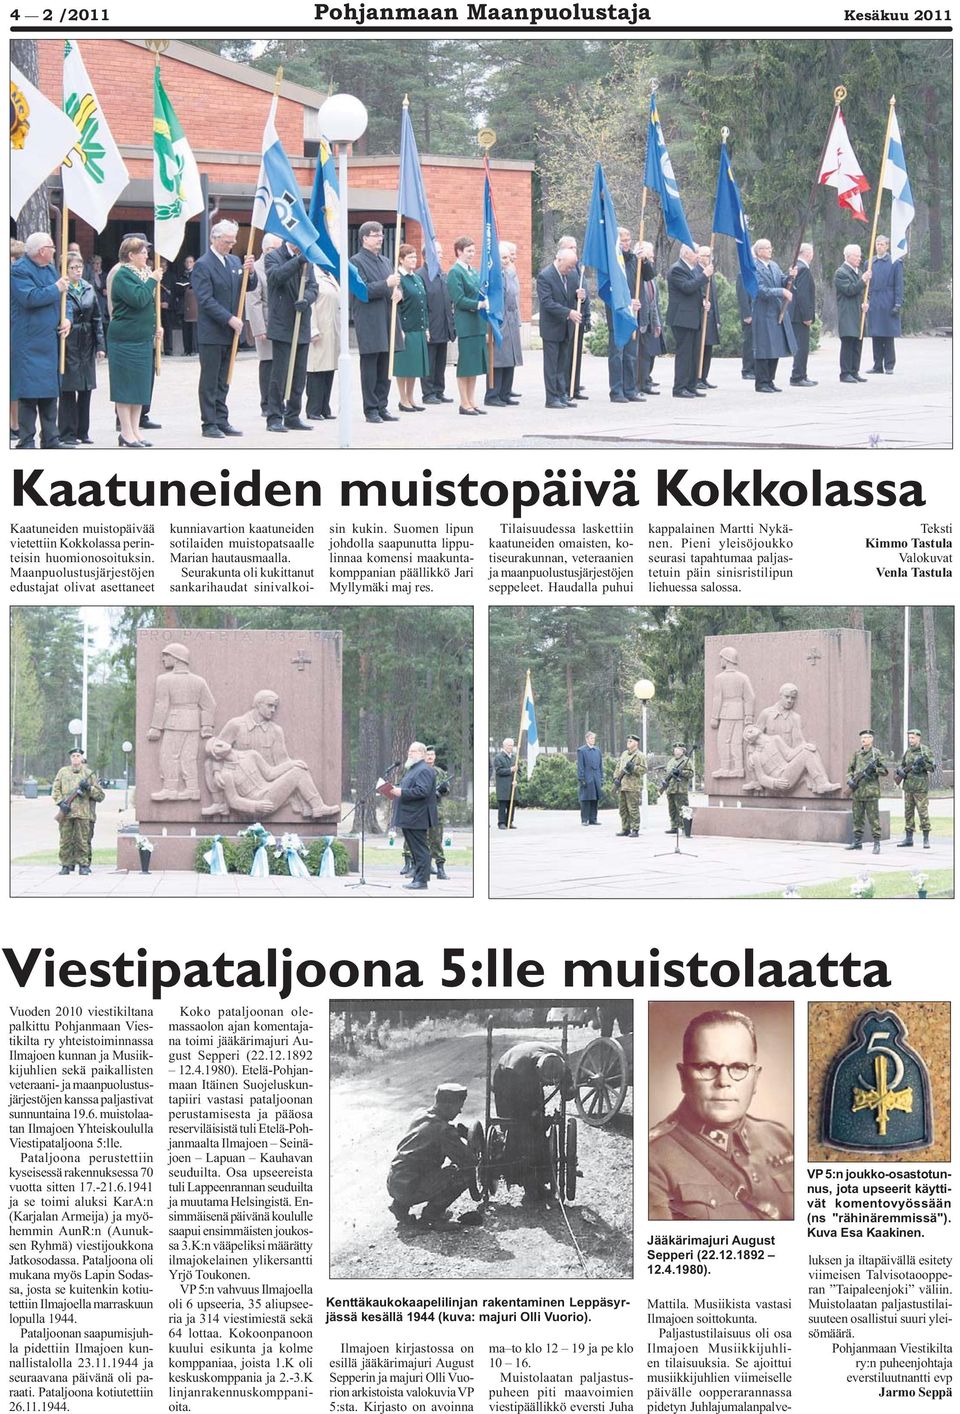 Suomen lipun johdolla saapunutta lippulinnaa komensi maakuntakomppanian päällikkö Jari Myllymäki maj res.